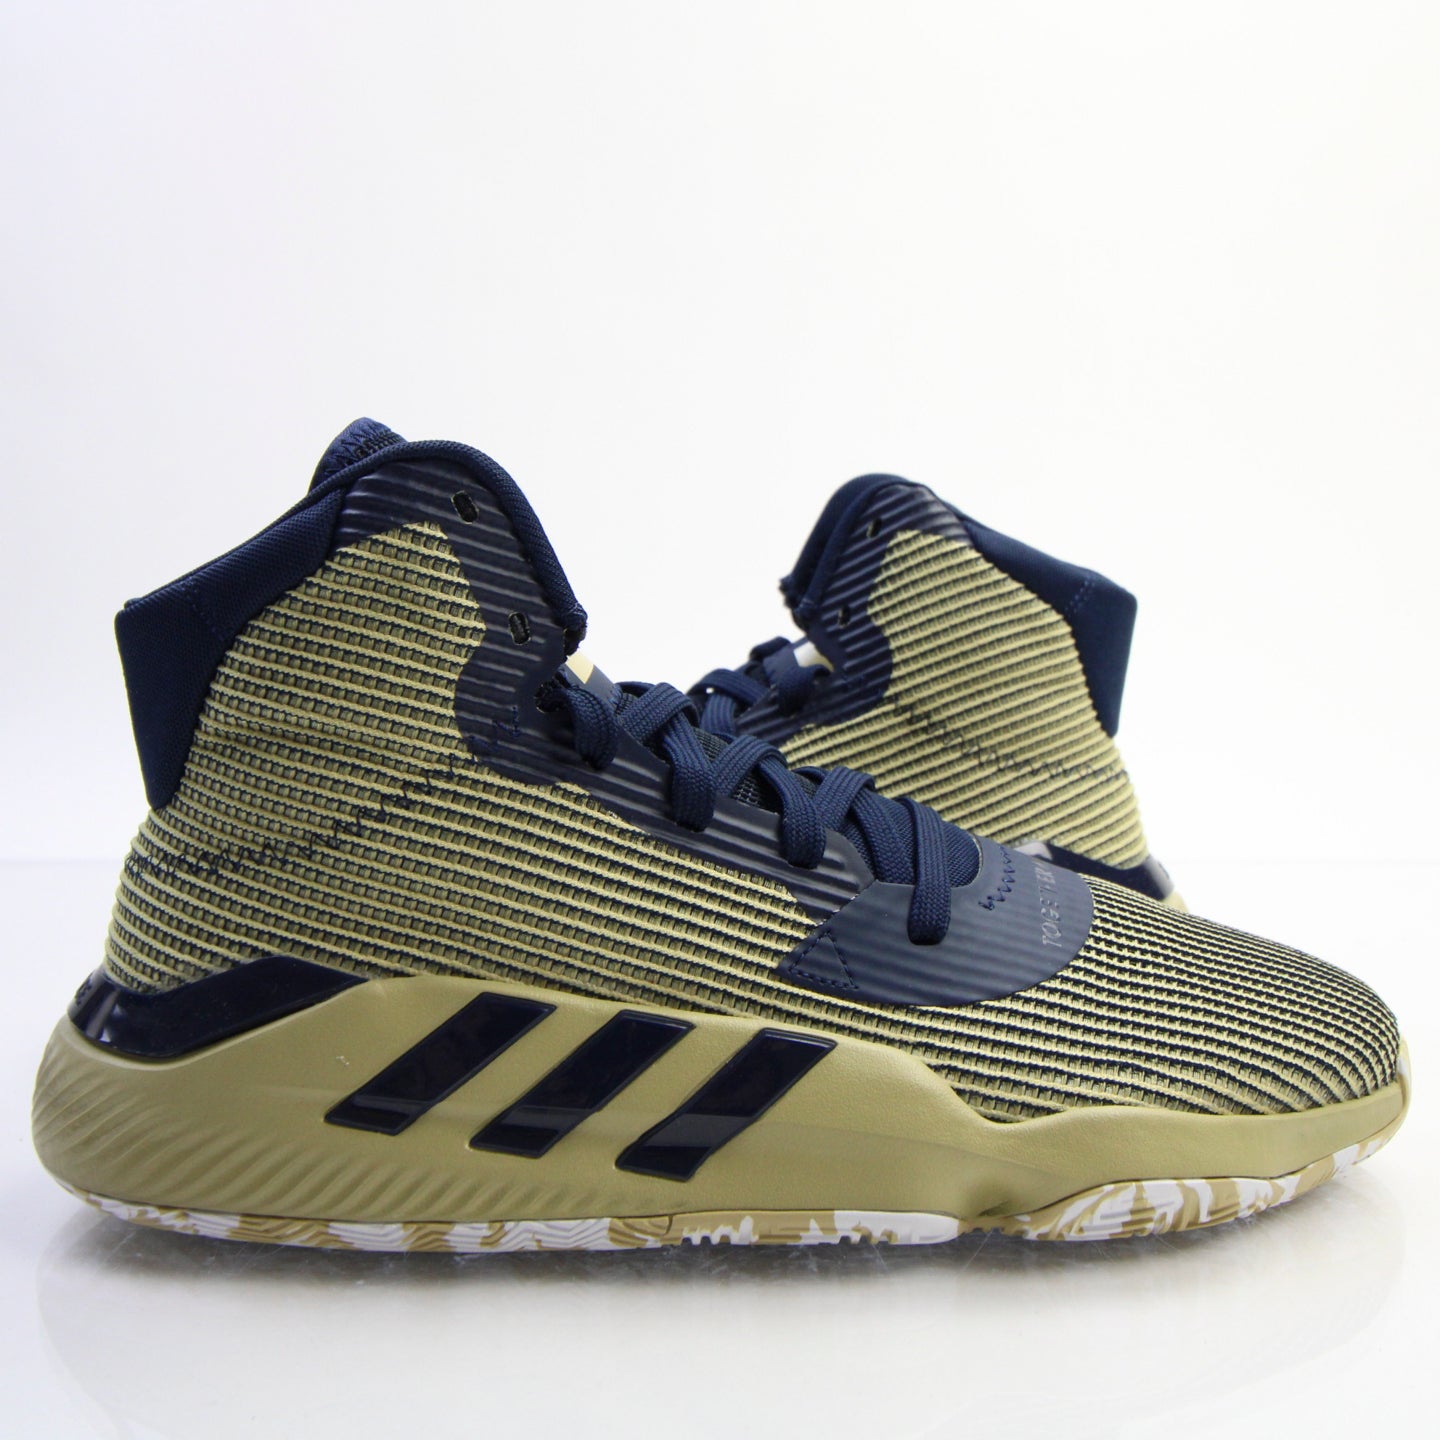 Adidas Pro Bounce 2019 | NBA Shoes Database